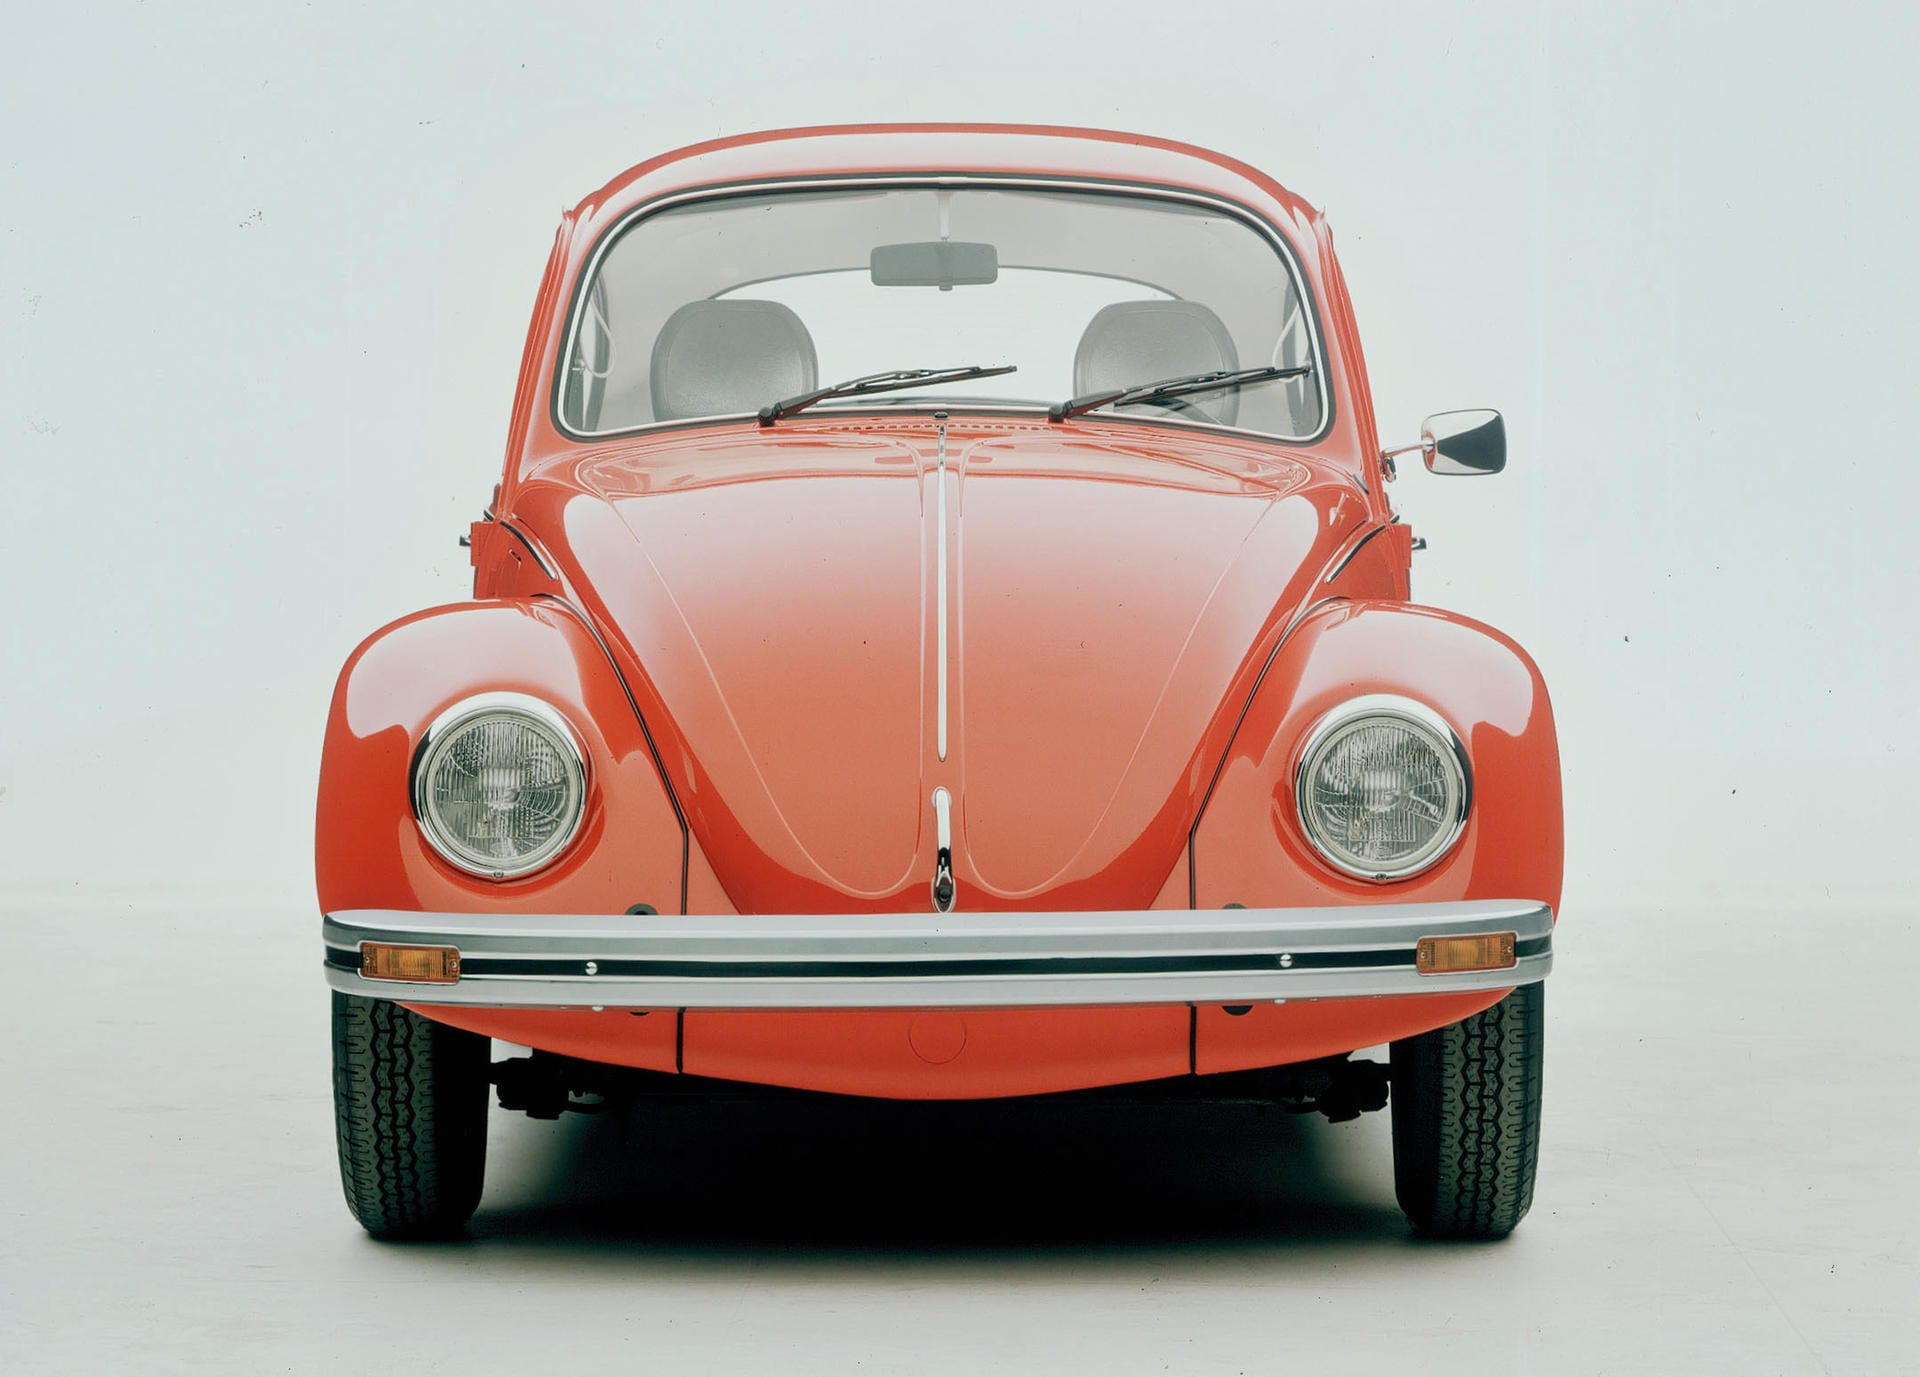 Nicht nur teure Luxus-Autos oder potente Sportwagen wurden zu Ikonen. Zu den berühmtesten Modellen zählt der VW Käfer. Kein Auto steht so für die Massenmotorisierung wie der VW-Klassiker. Im Jahr 2003 lief der letzte Käfer in Mexiko vom Band.